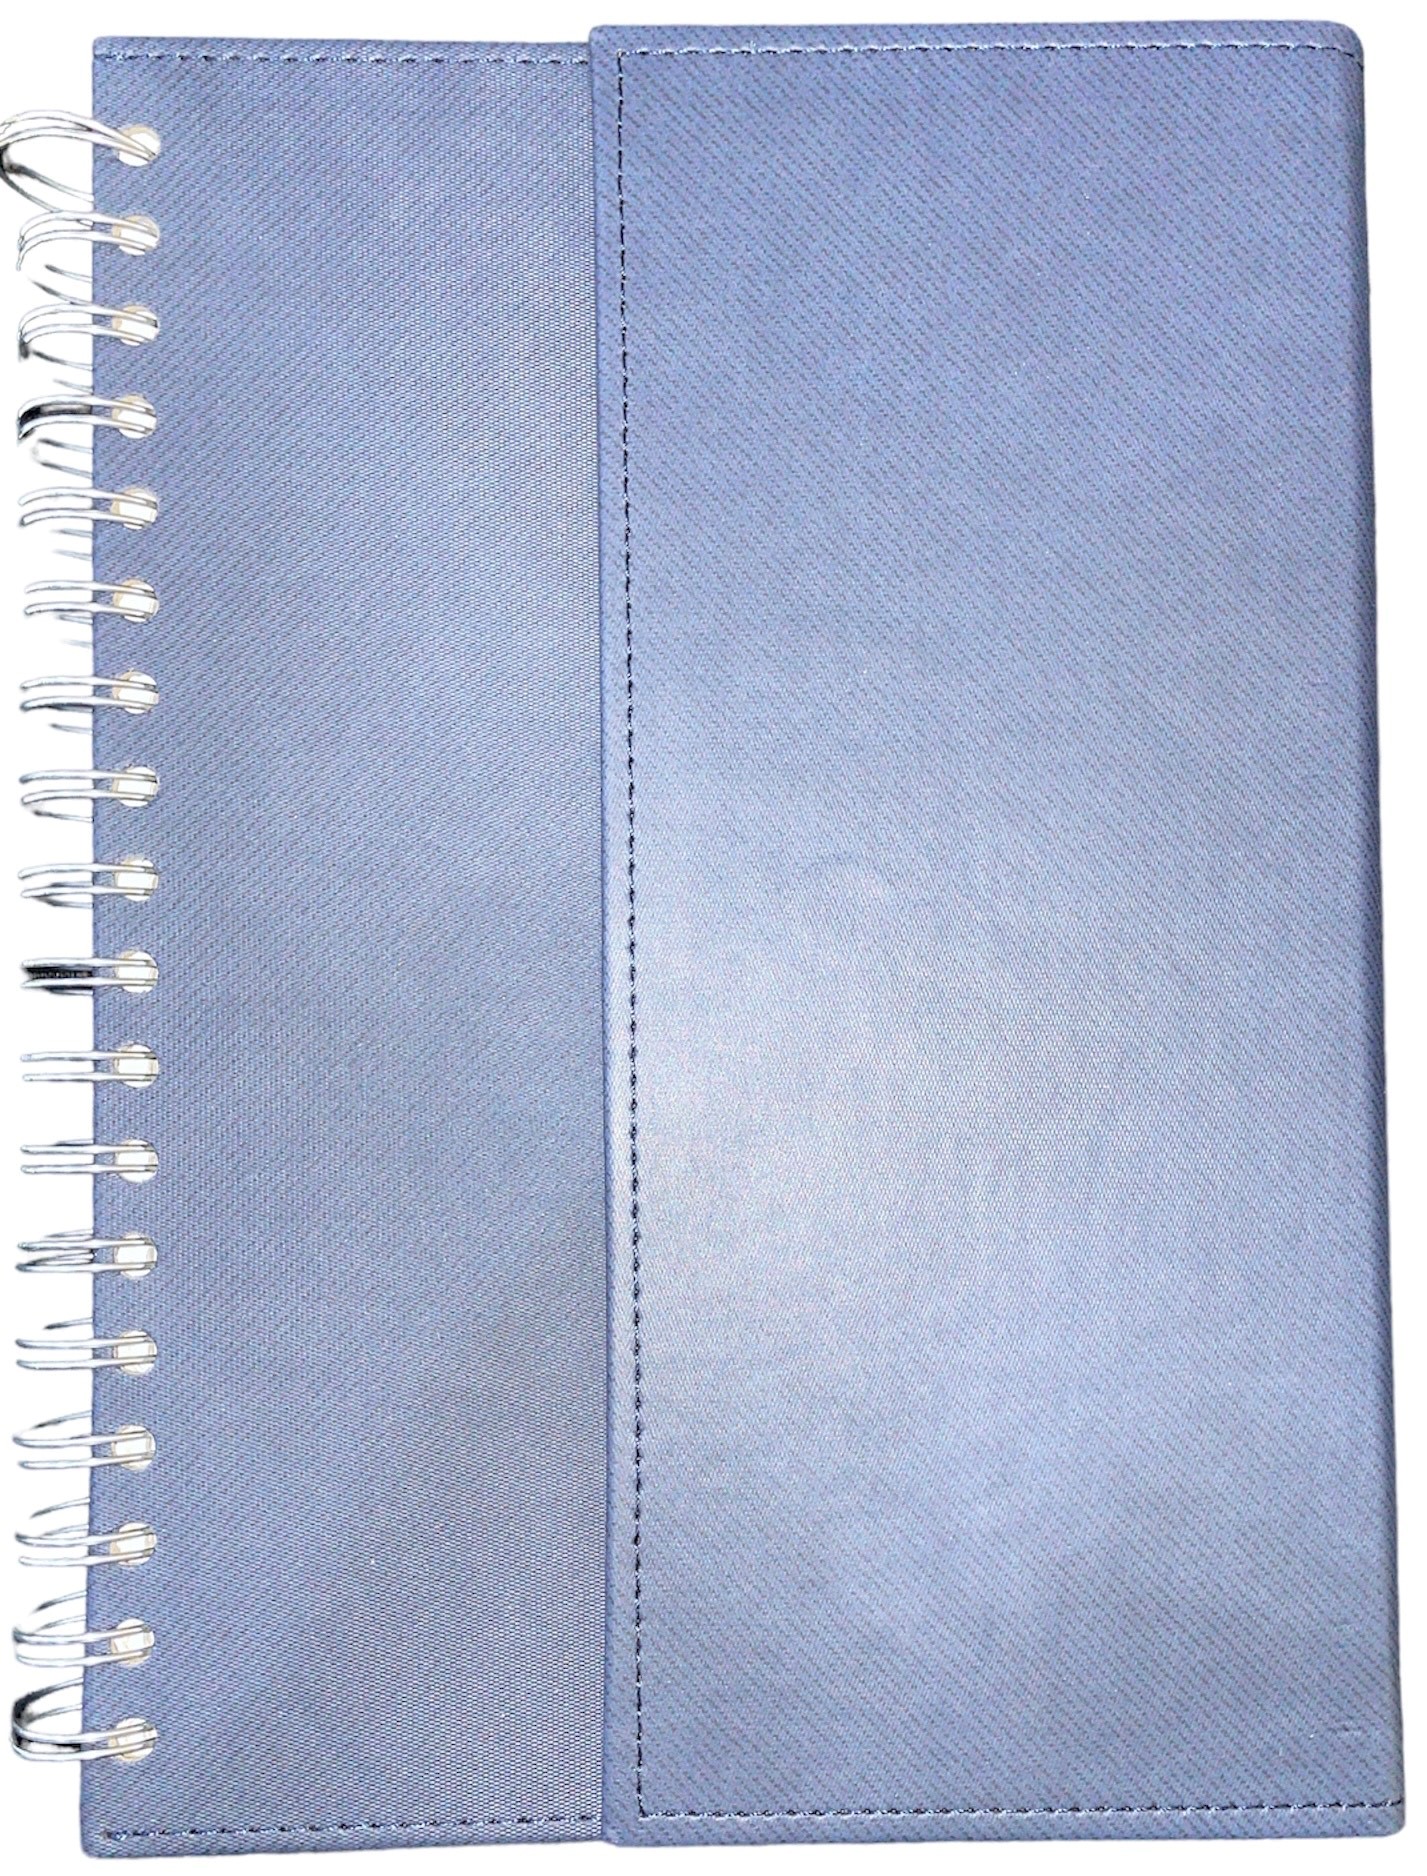 Notebook Premium cuaderno anillado